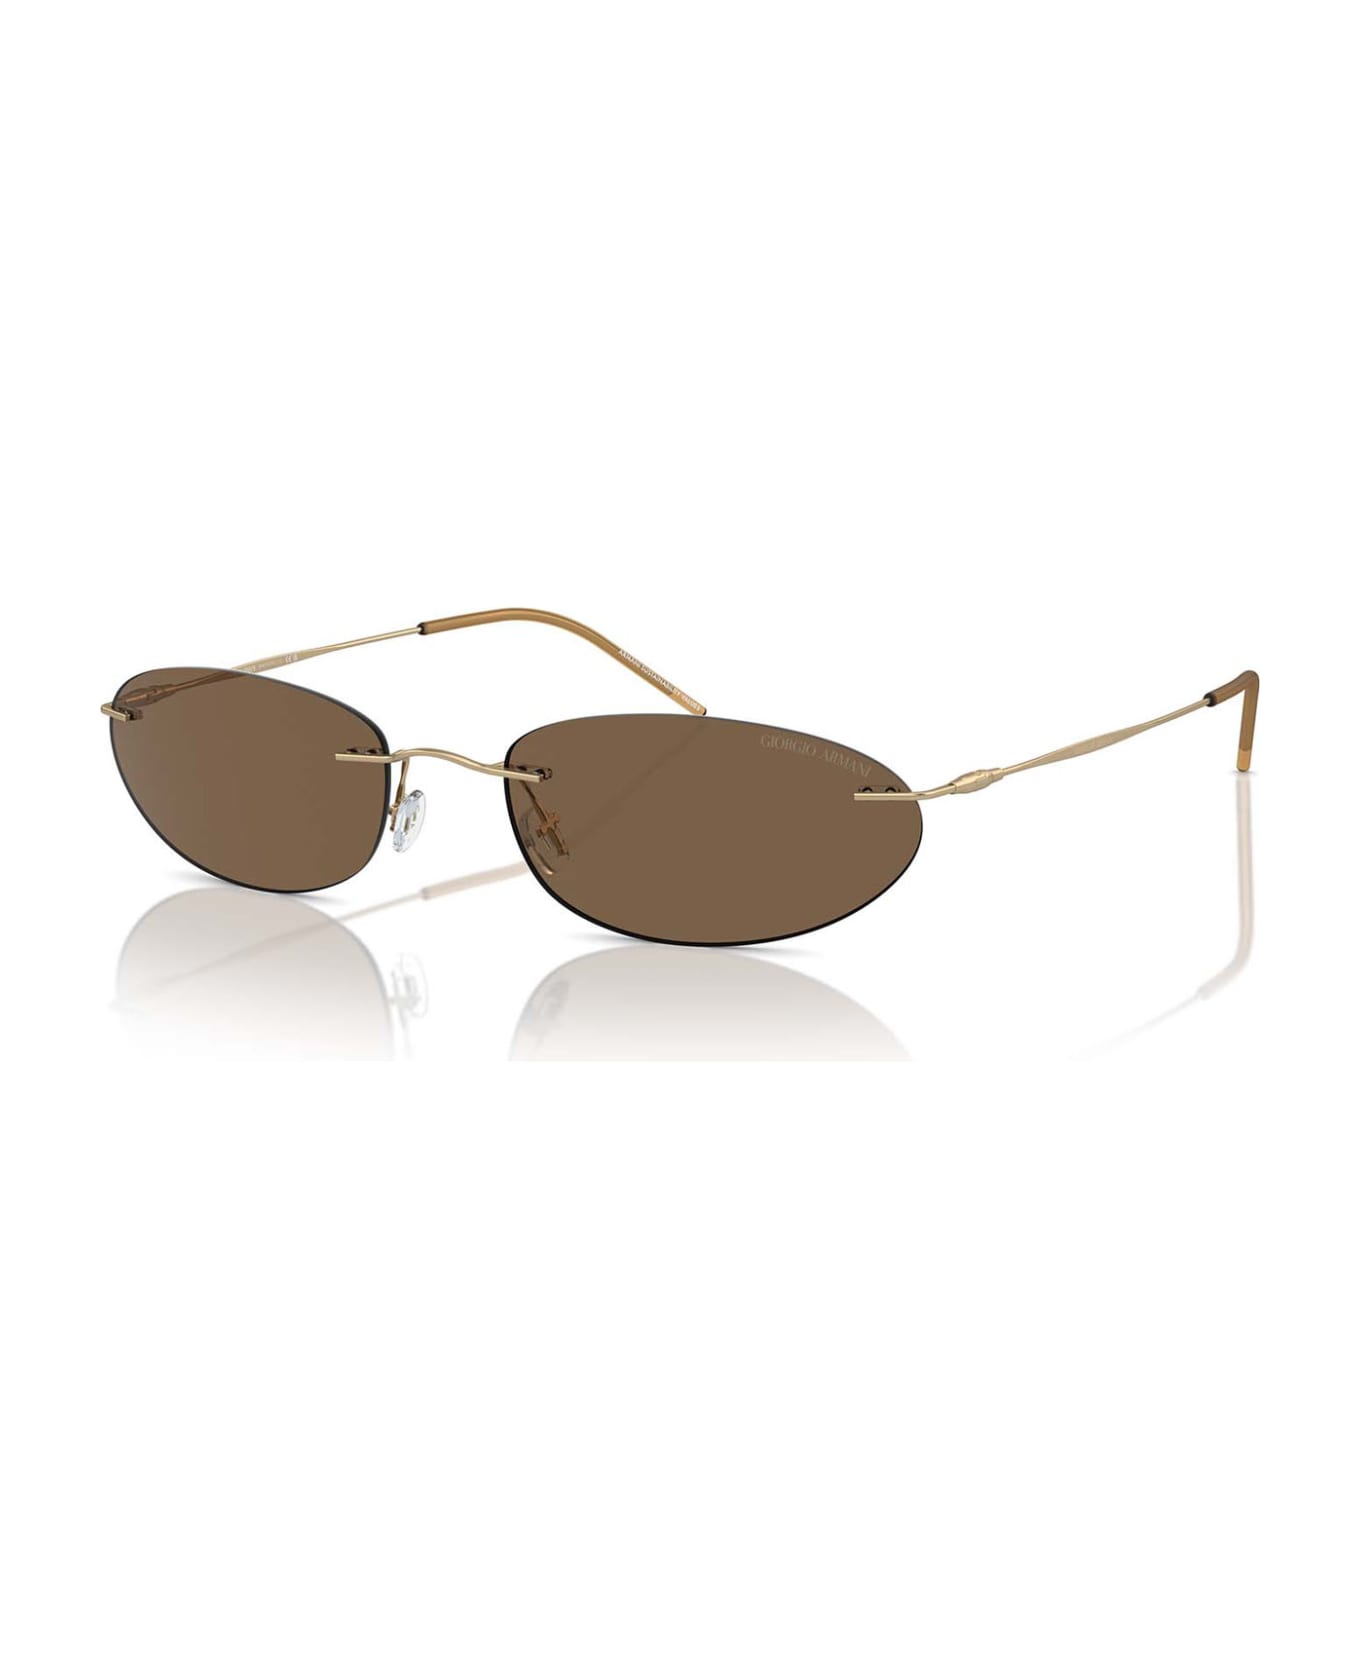 Giorgio Armani Ar1508m Matte Pale Gold Sunglasses - Matte Pale Gold サングラス